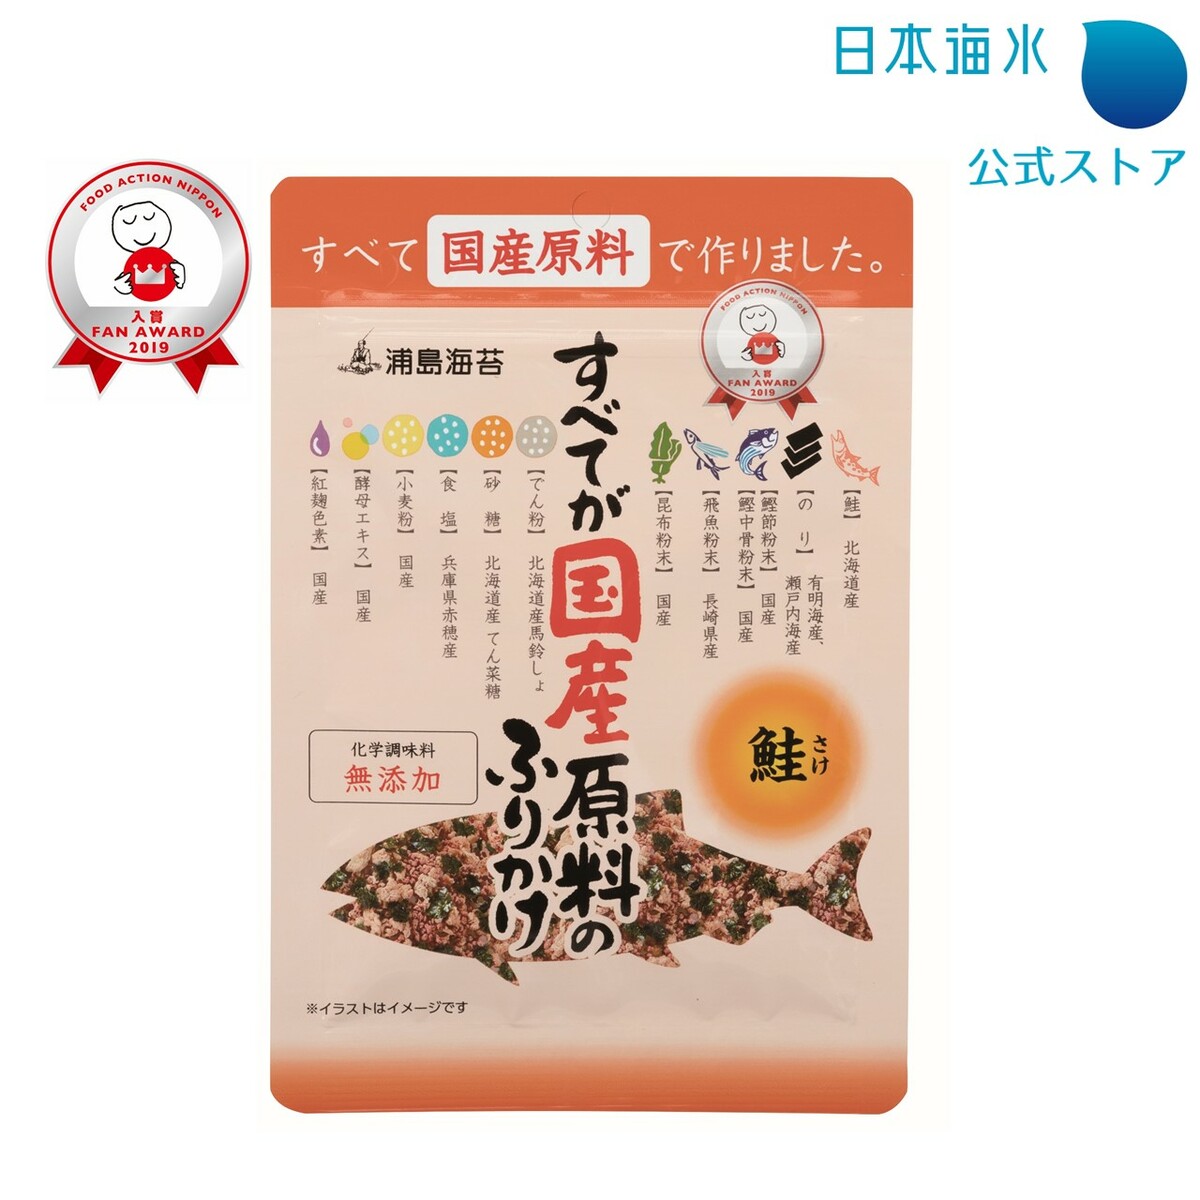 北海道産鮭 化学調味料 無添加 ふりかけ 鮭ふりかけ 国産原料 こだわりふりかけ 日本海水 浦島海苔 鮭 カタログギフトも すべてが国産原料のふりかけ